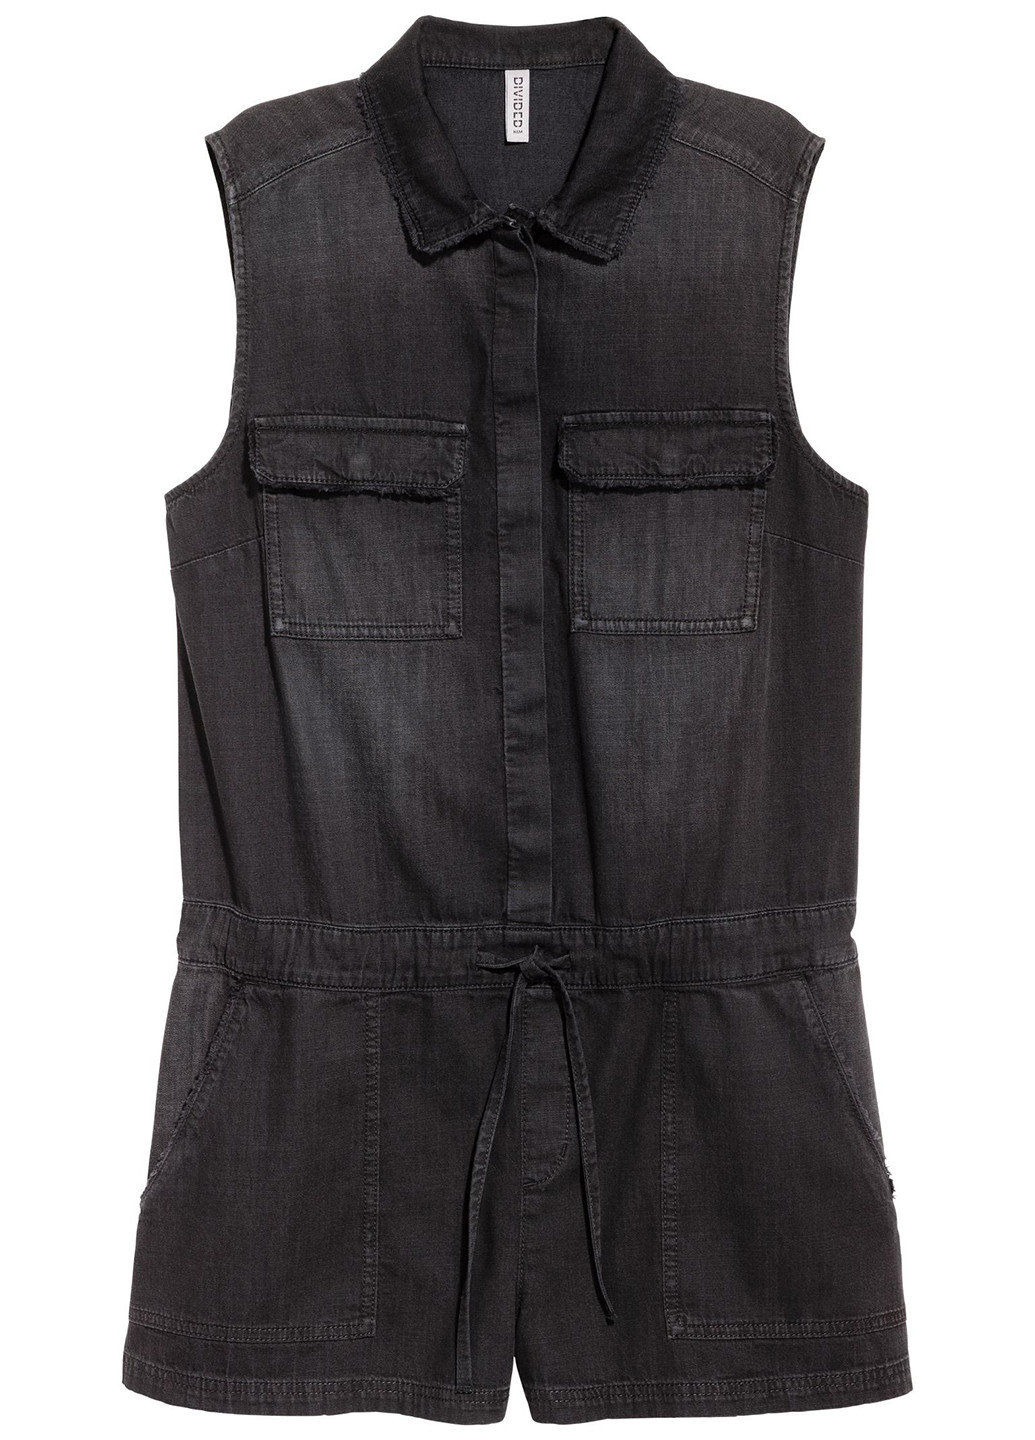 Комбiнезон H&M комбинезон-шорты однотонный чёрный денил хлопок